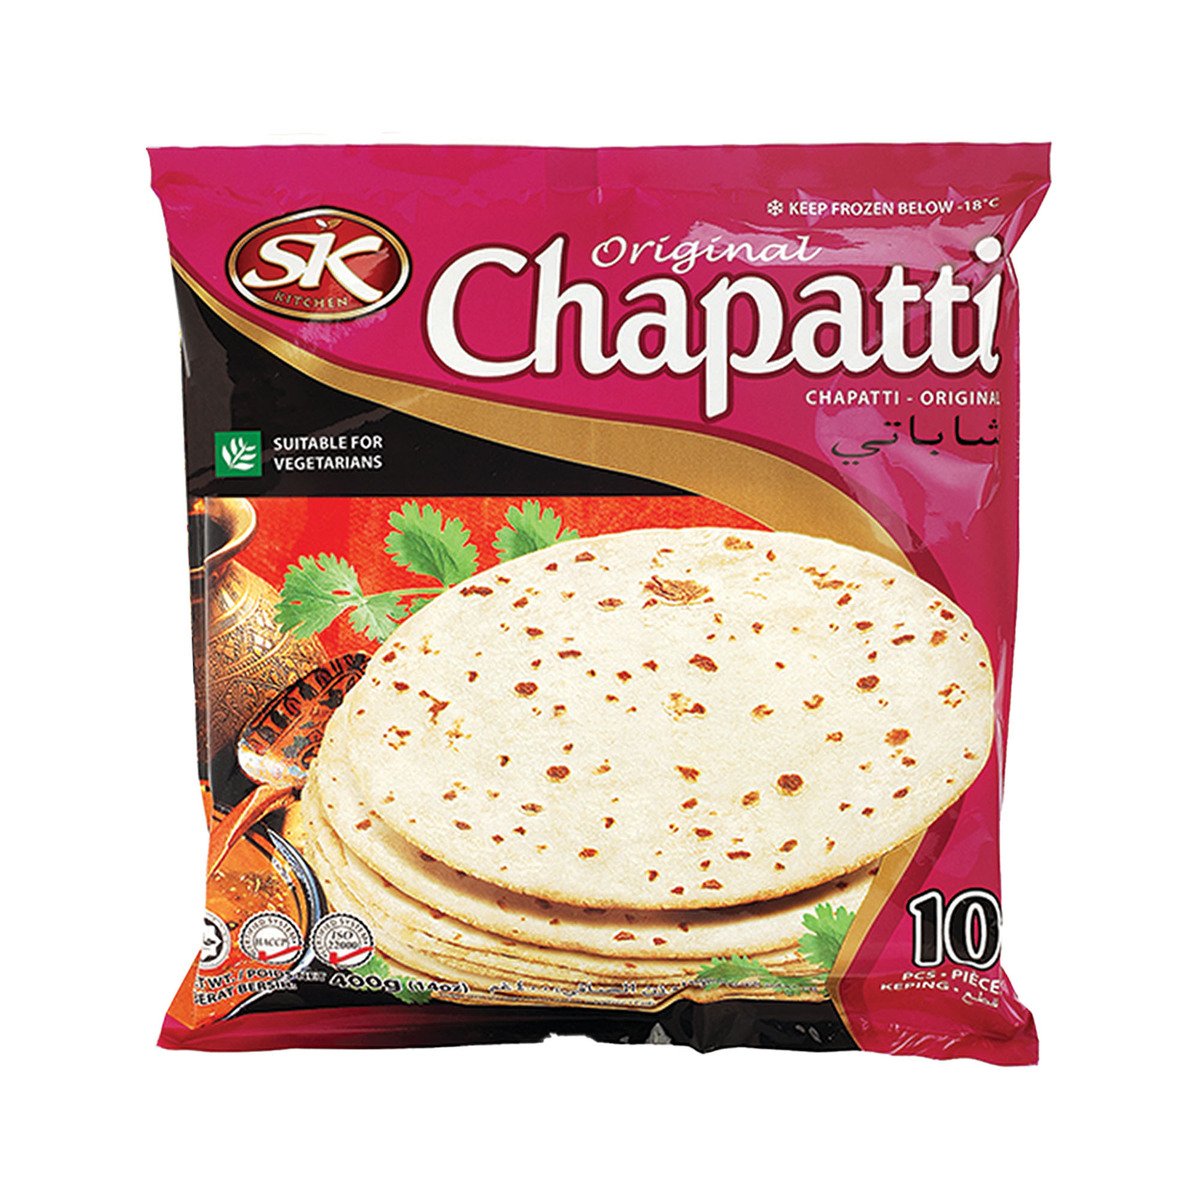 SK Original Chapatti 3 x 400 g